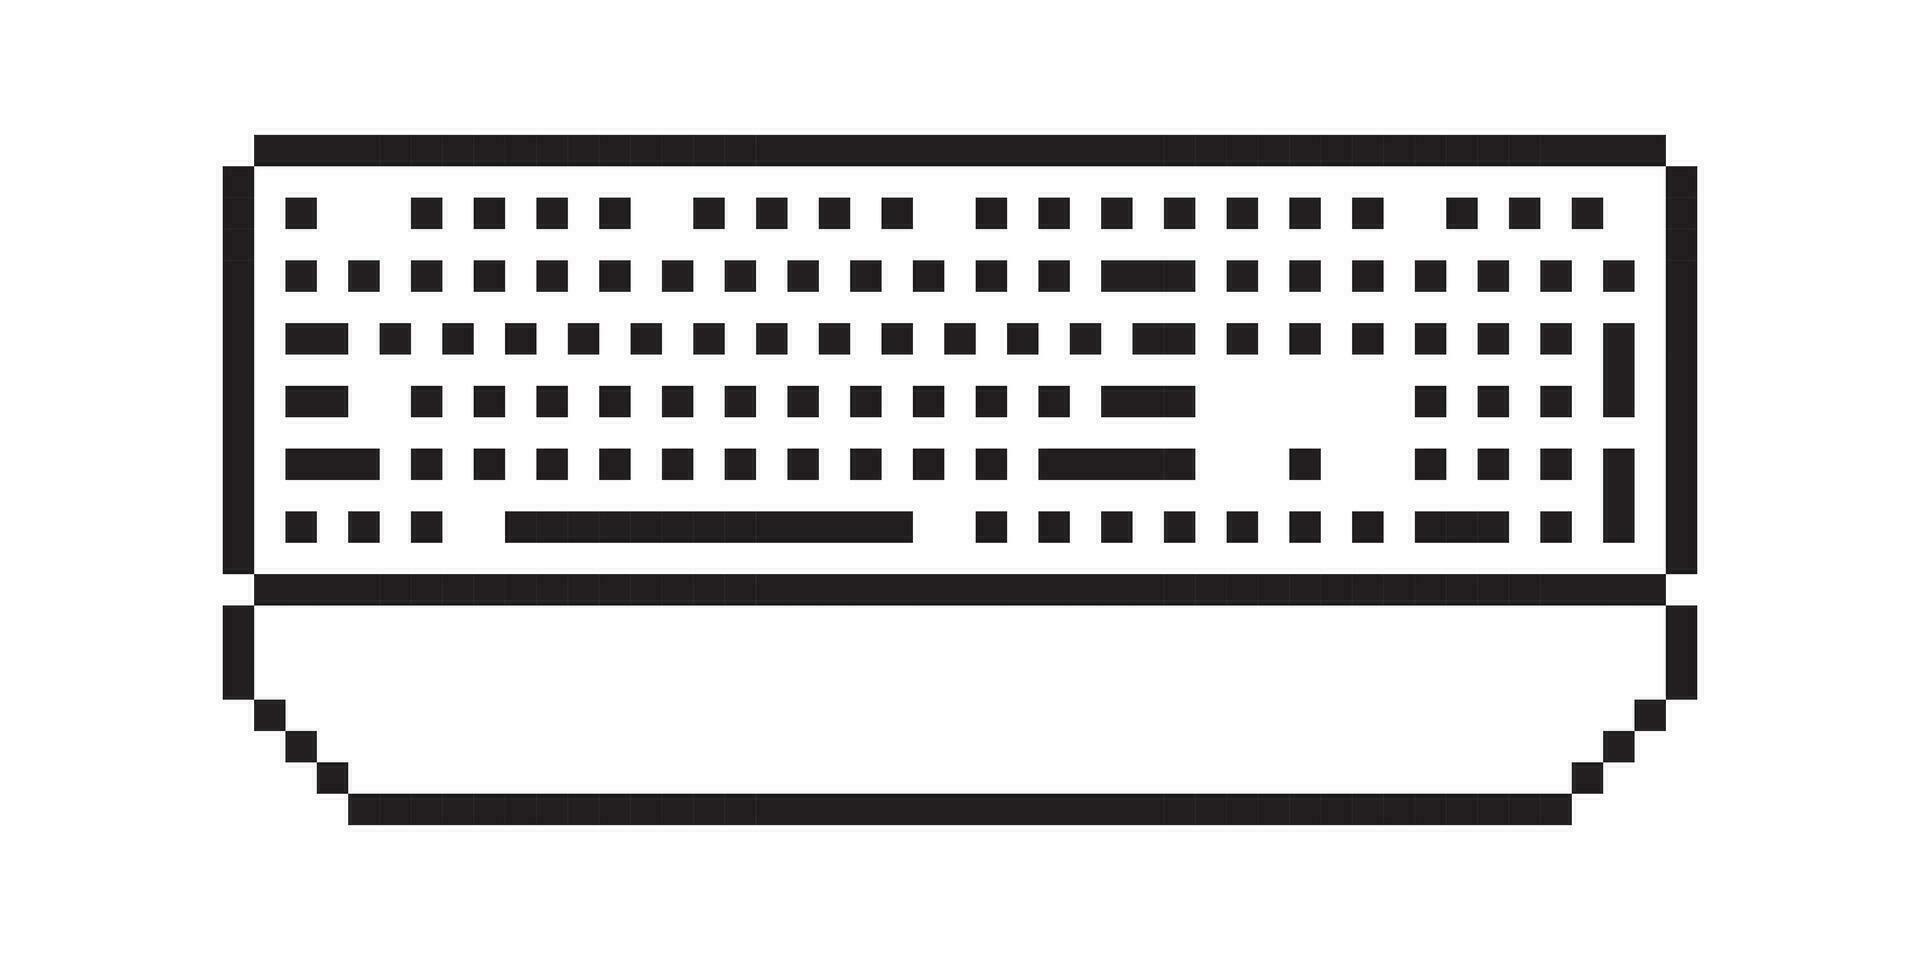 pc teclado pixel arte estilo vetor ilustração